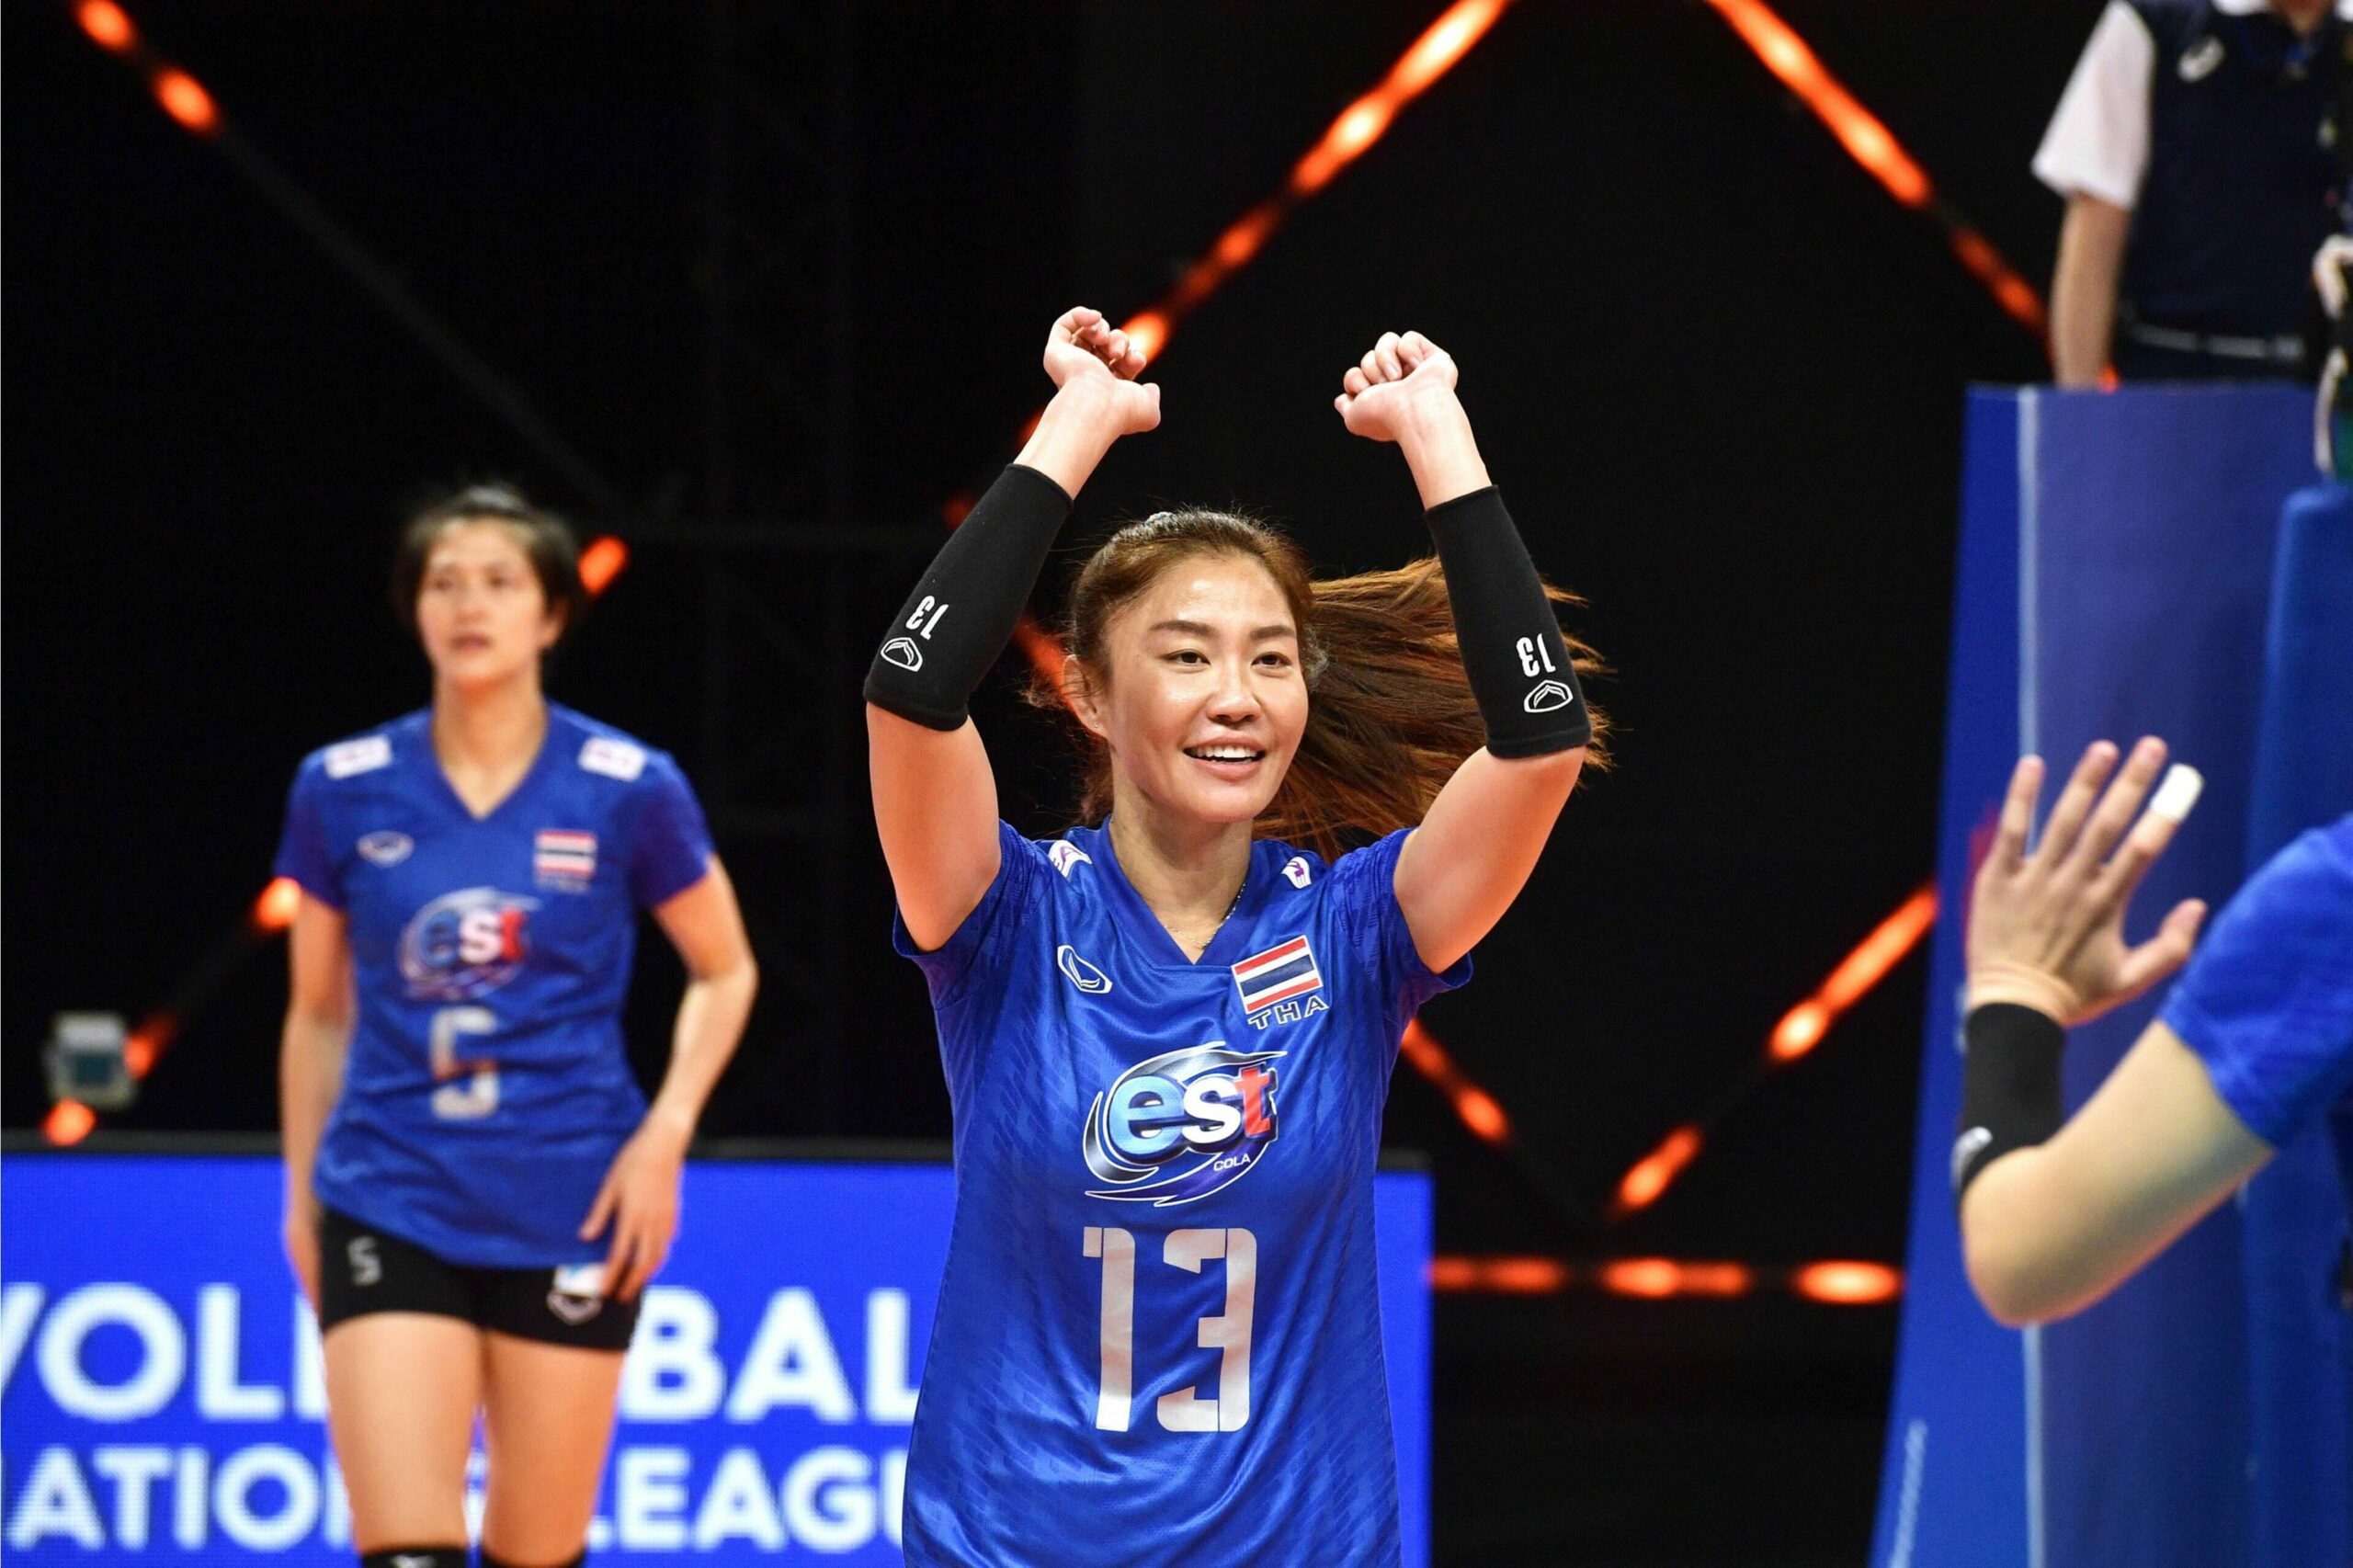 El voleibol de mujeres tailandesas recibió $ 12,000 a pesar de perder 3 juegos consecutivos.